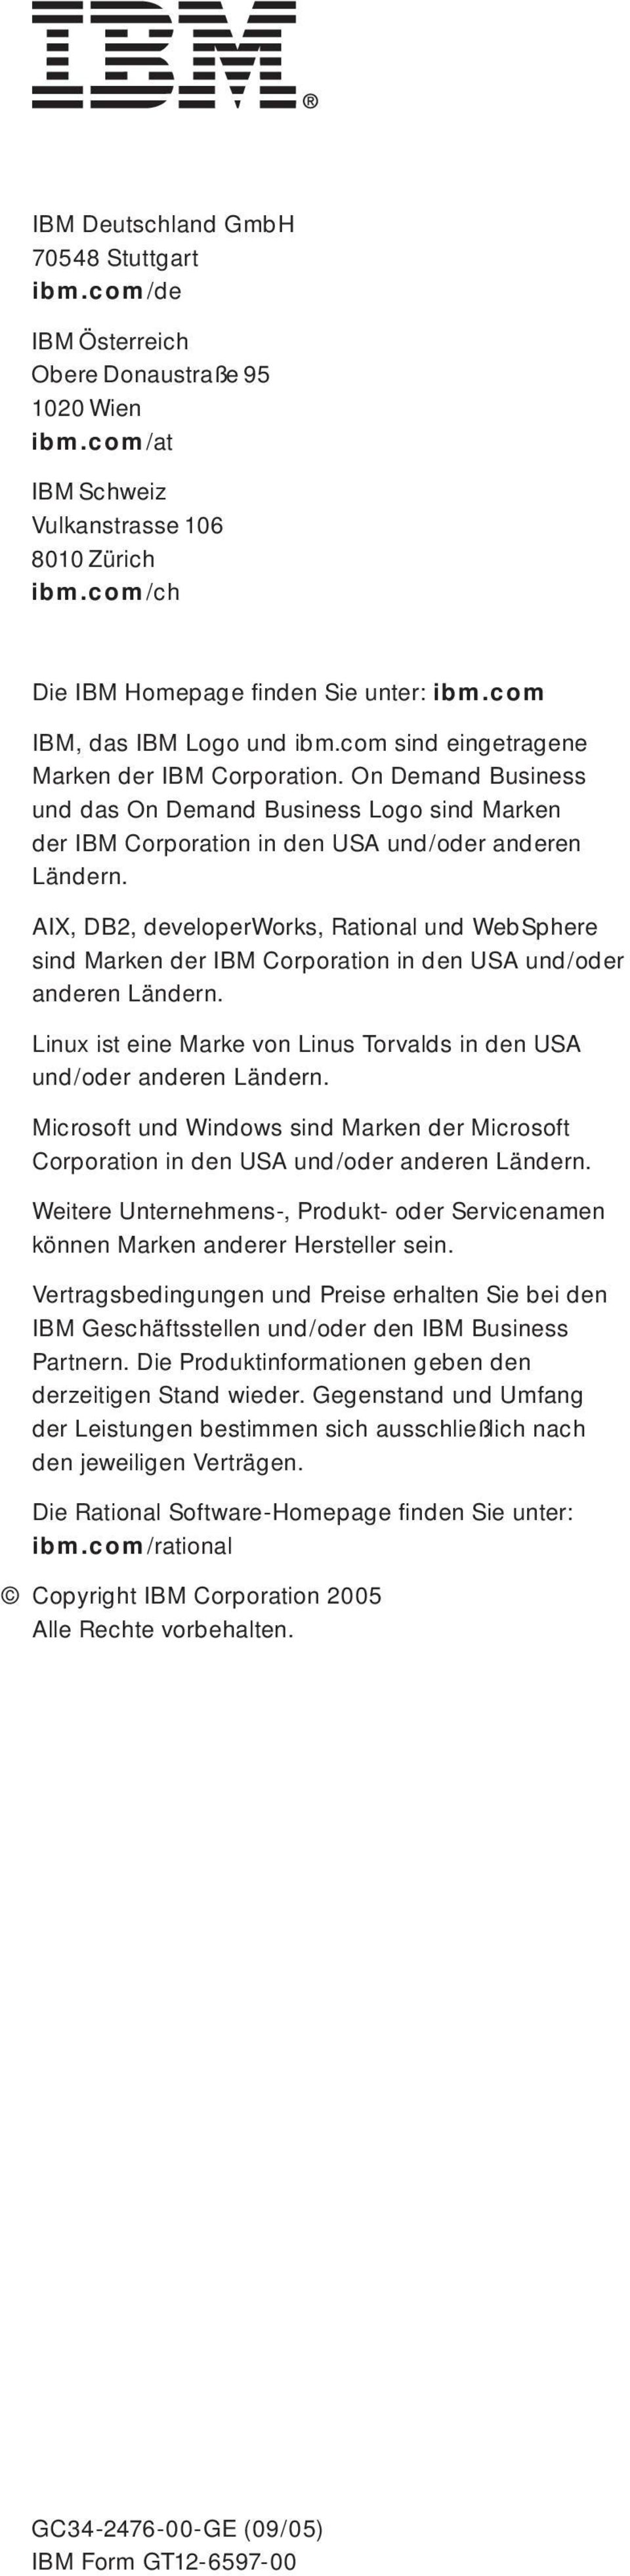 AIX, DB2, developerworks, Rational und WebSphere sind Marken der IBM Corporation in den USA und/oder anderen Ländern. Linux ist eine Marke von Linus Torvalds in den USA und/oder anderen Ländern.